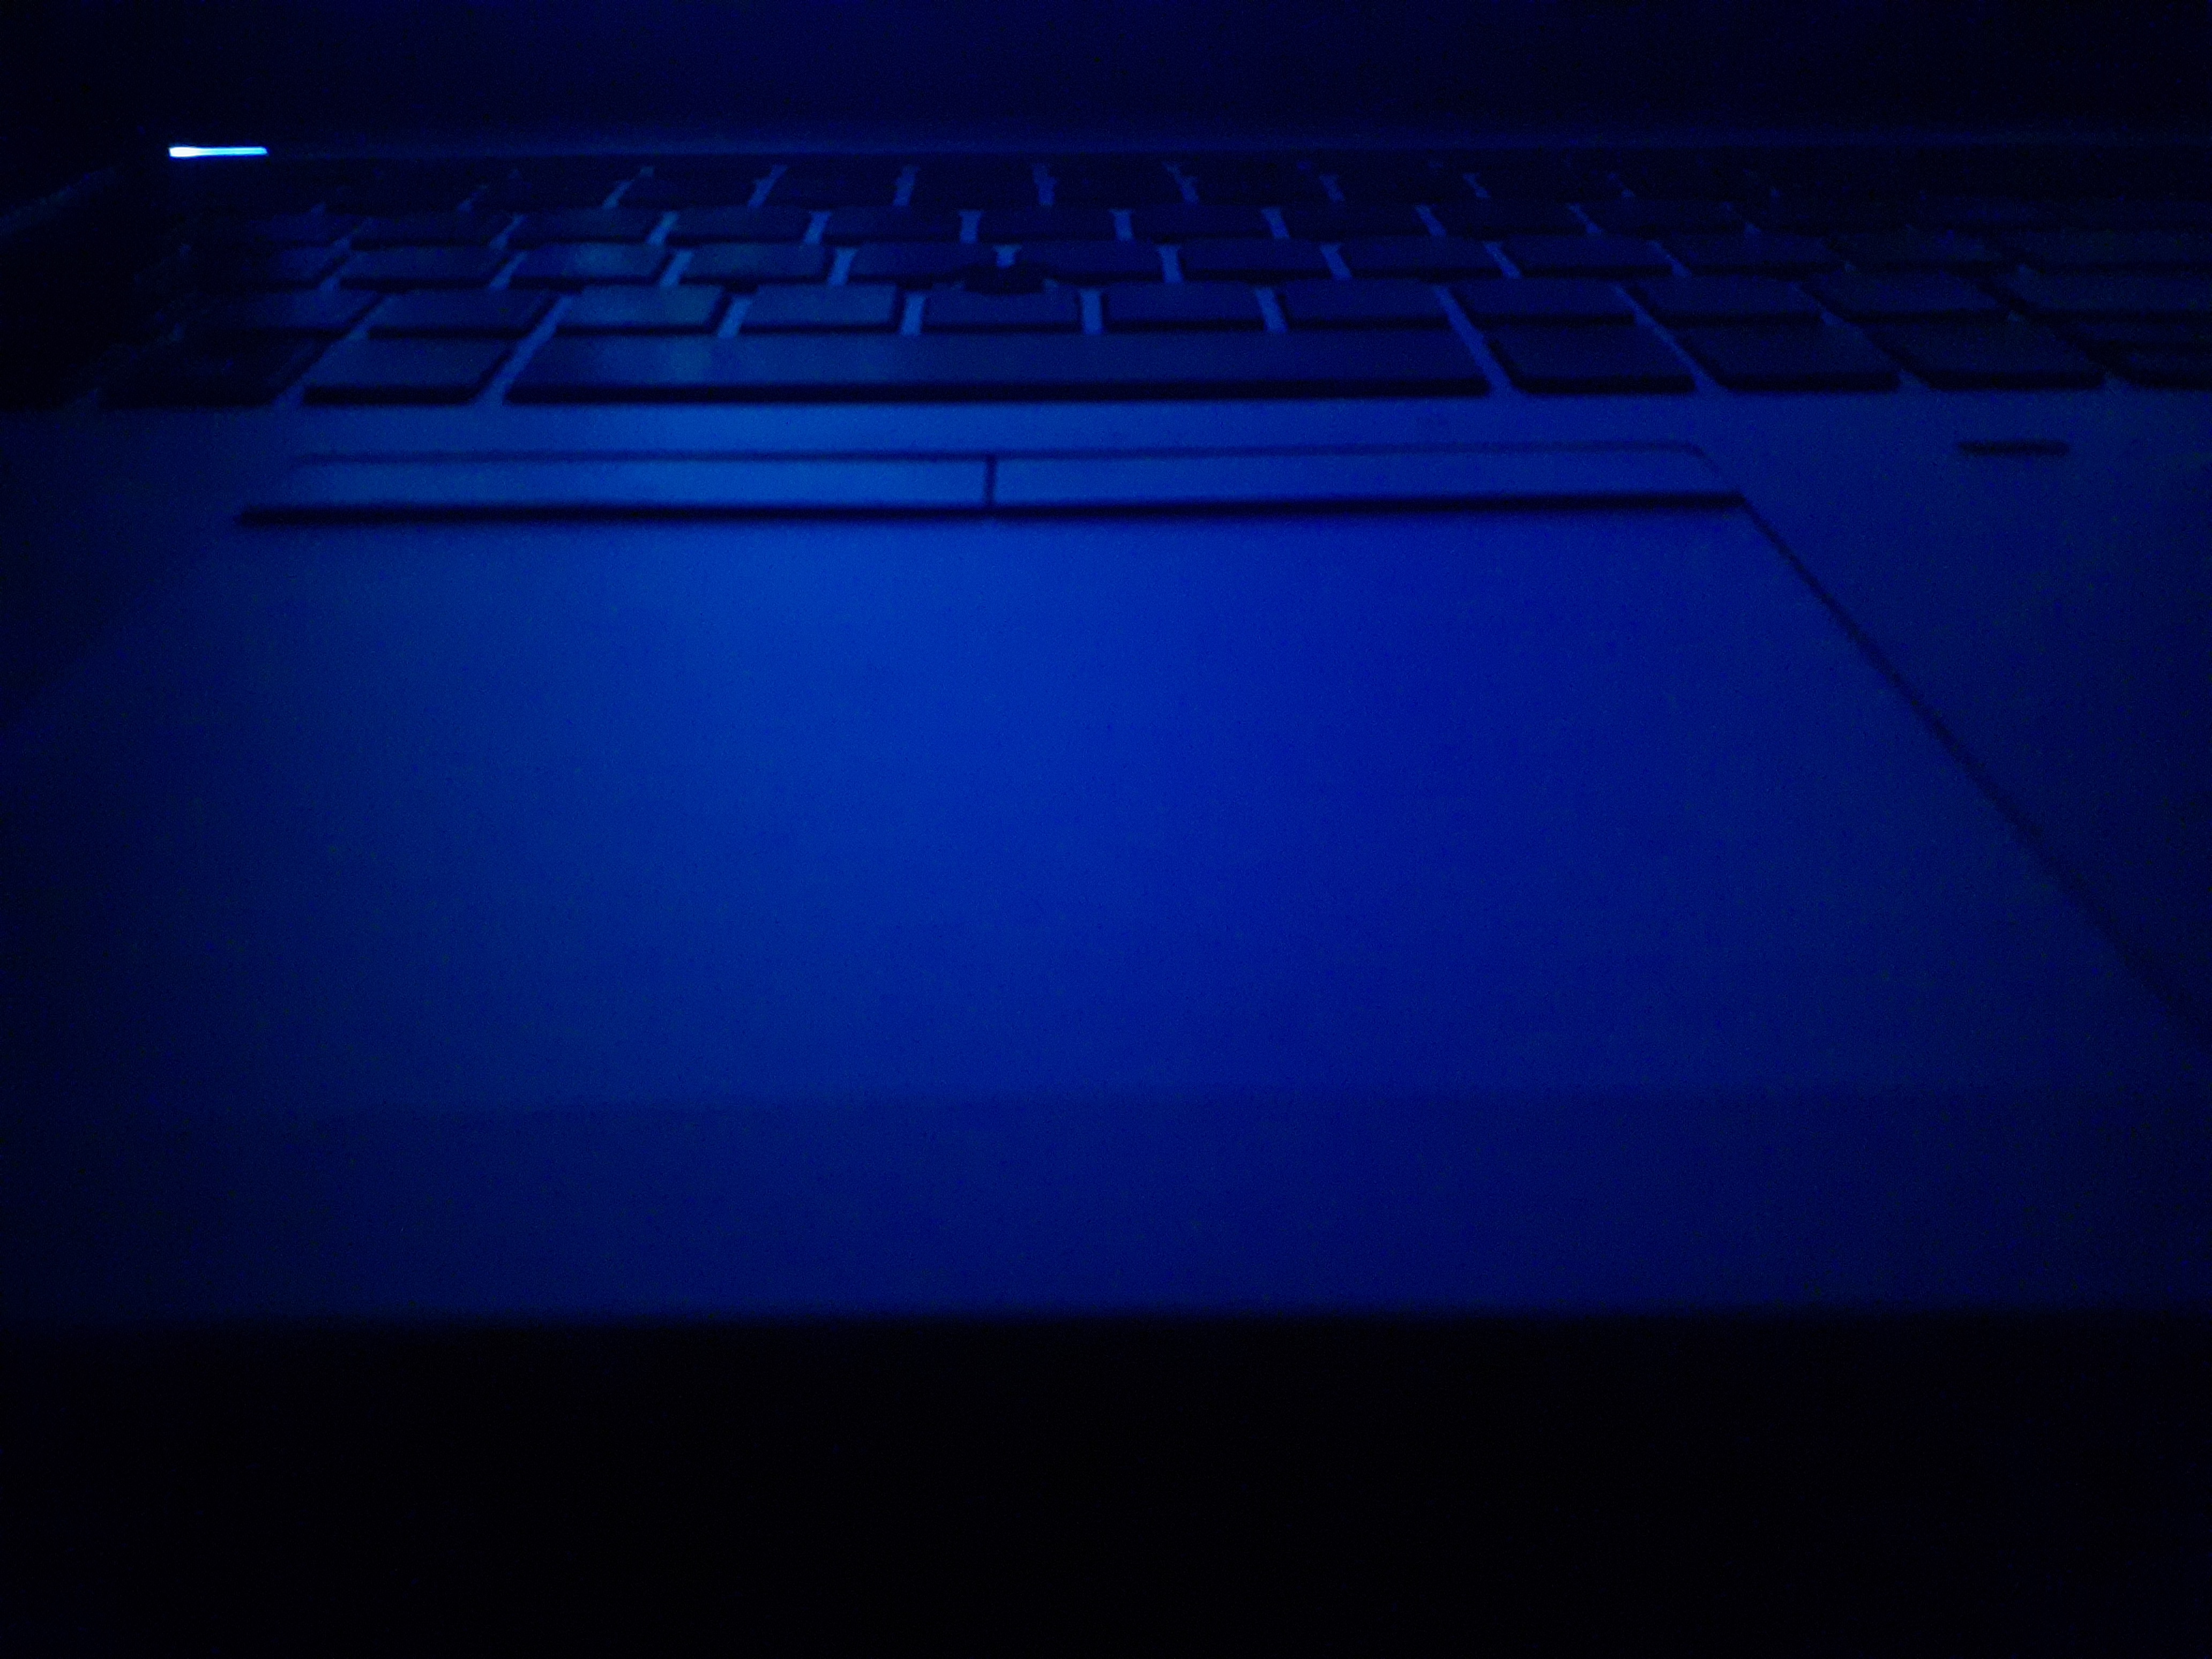 Laptop lit by blue light